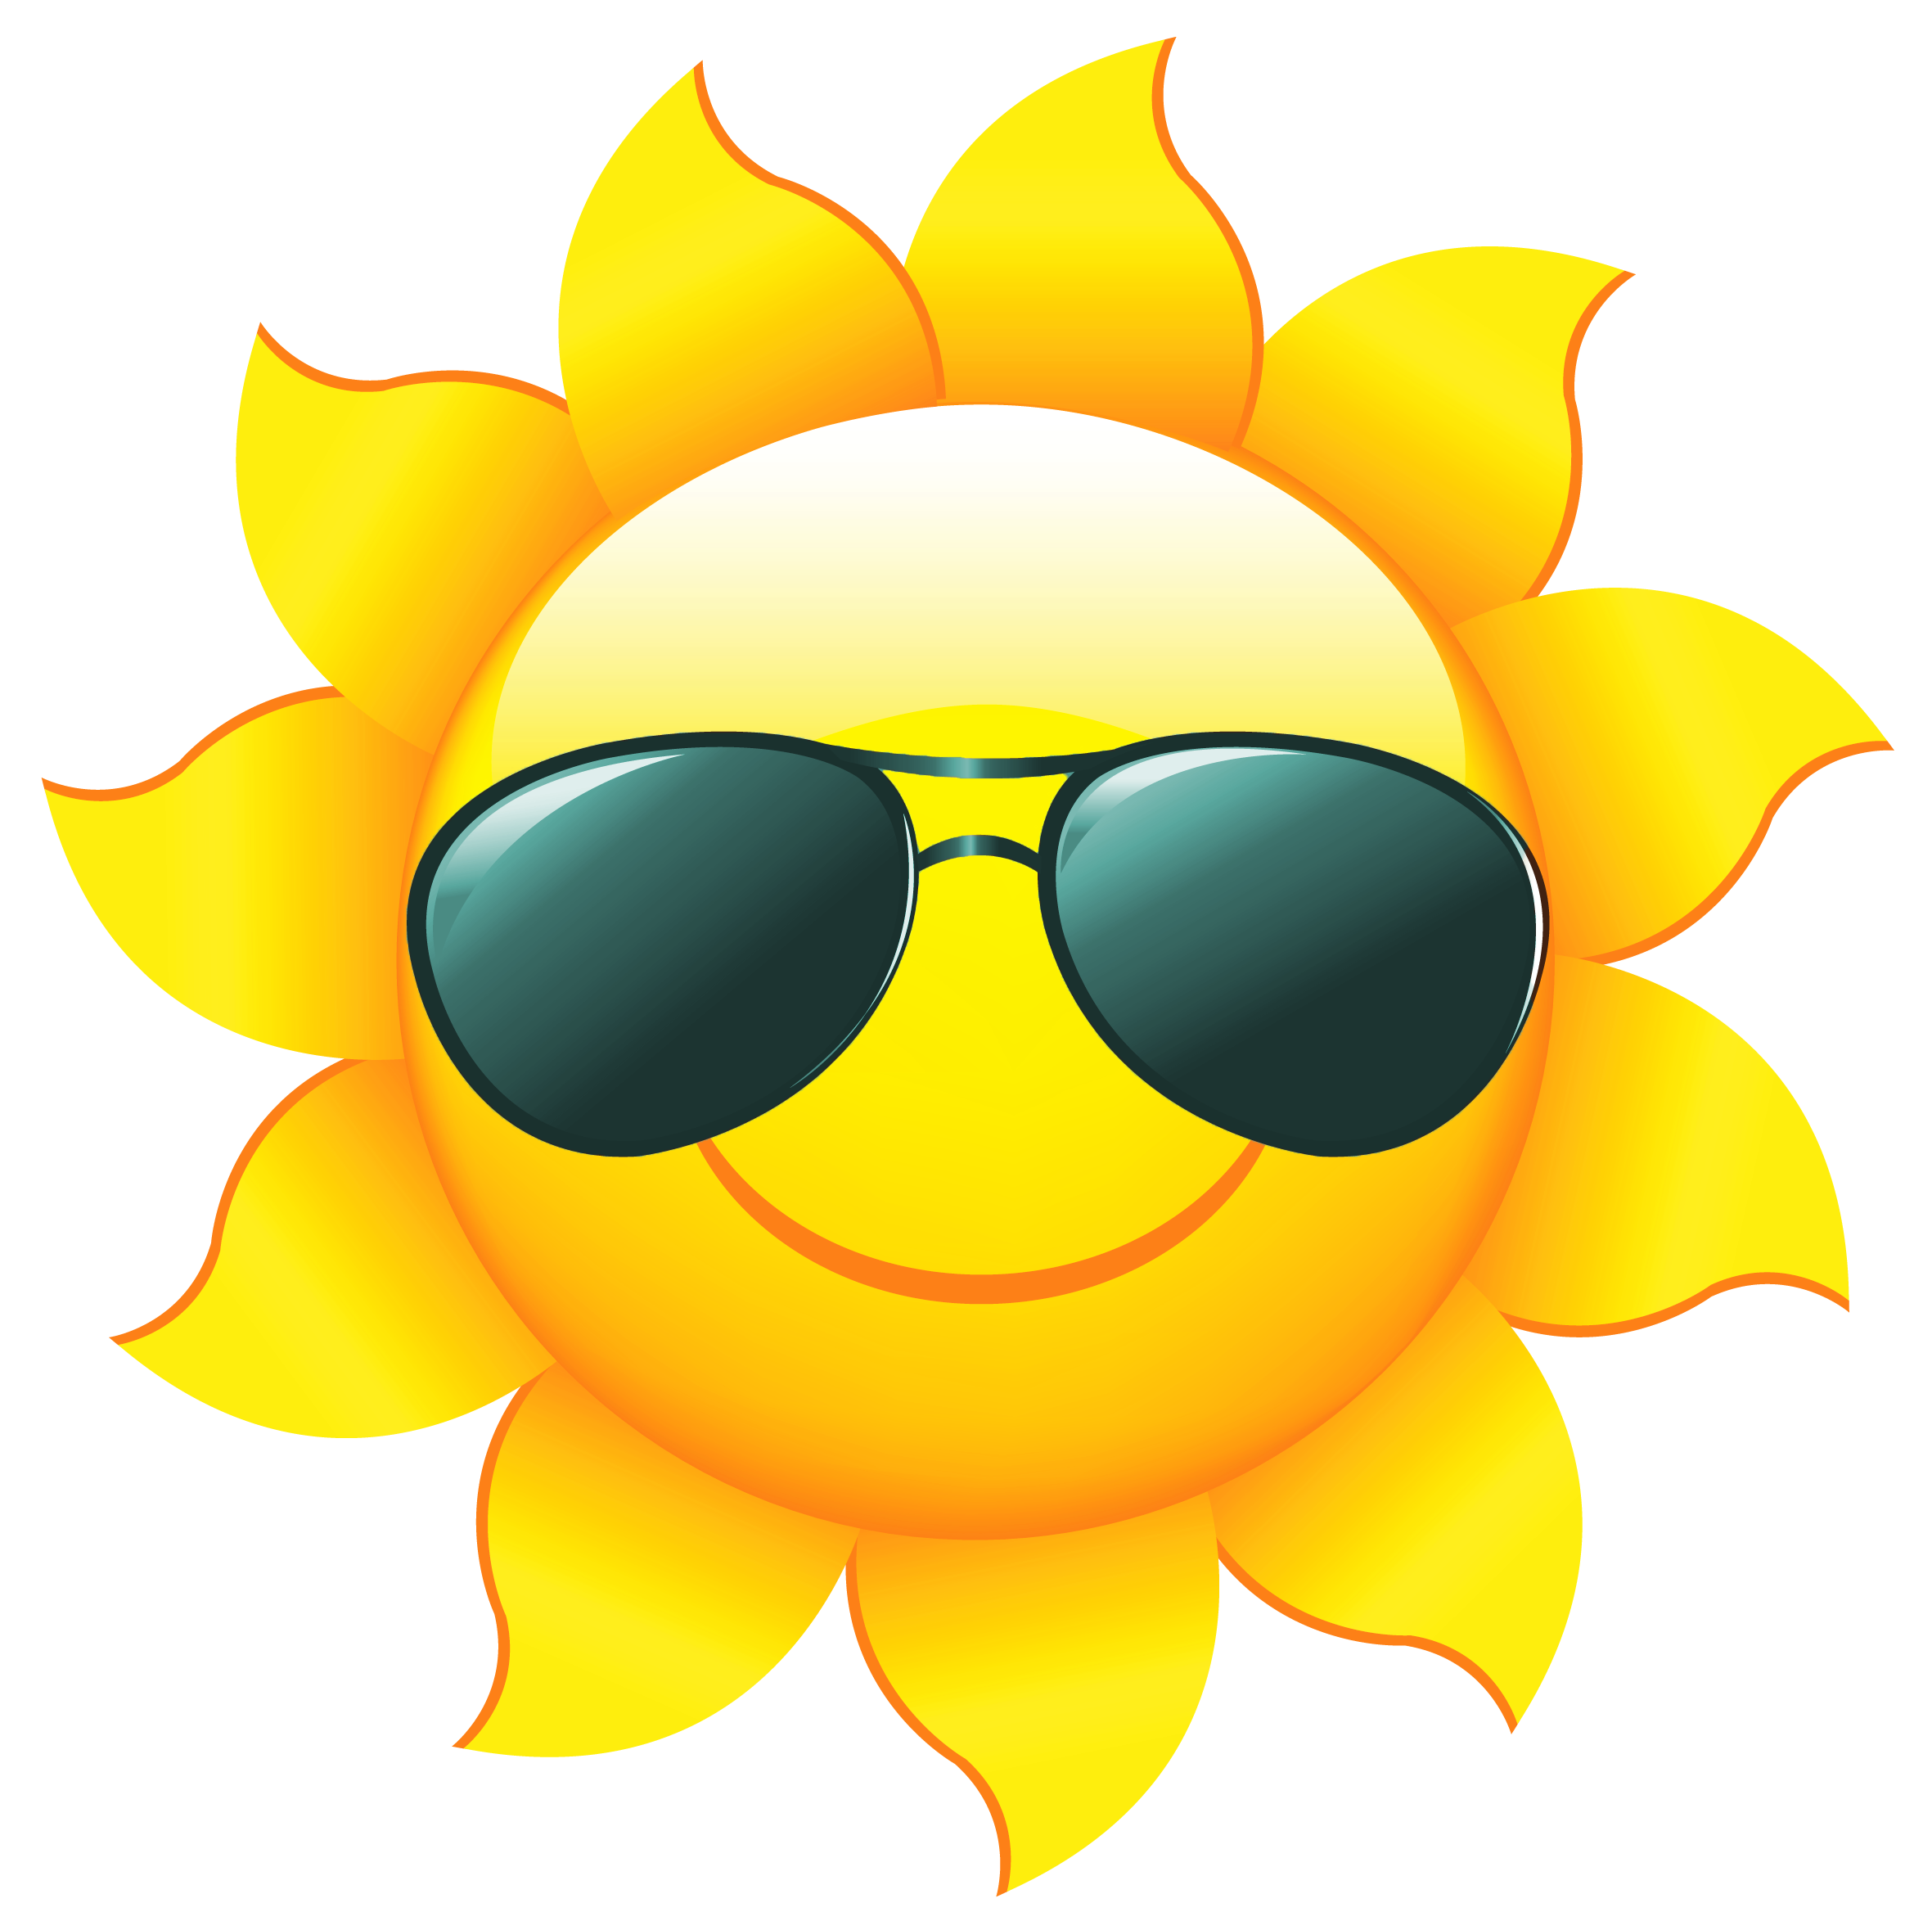 Sun with sunglasses clipart clip art - ClipartFox